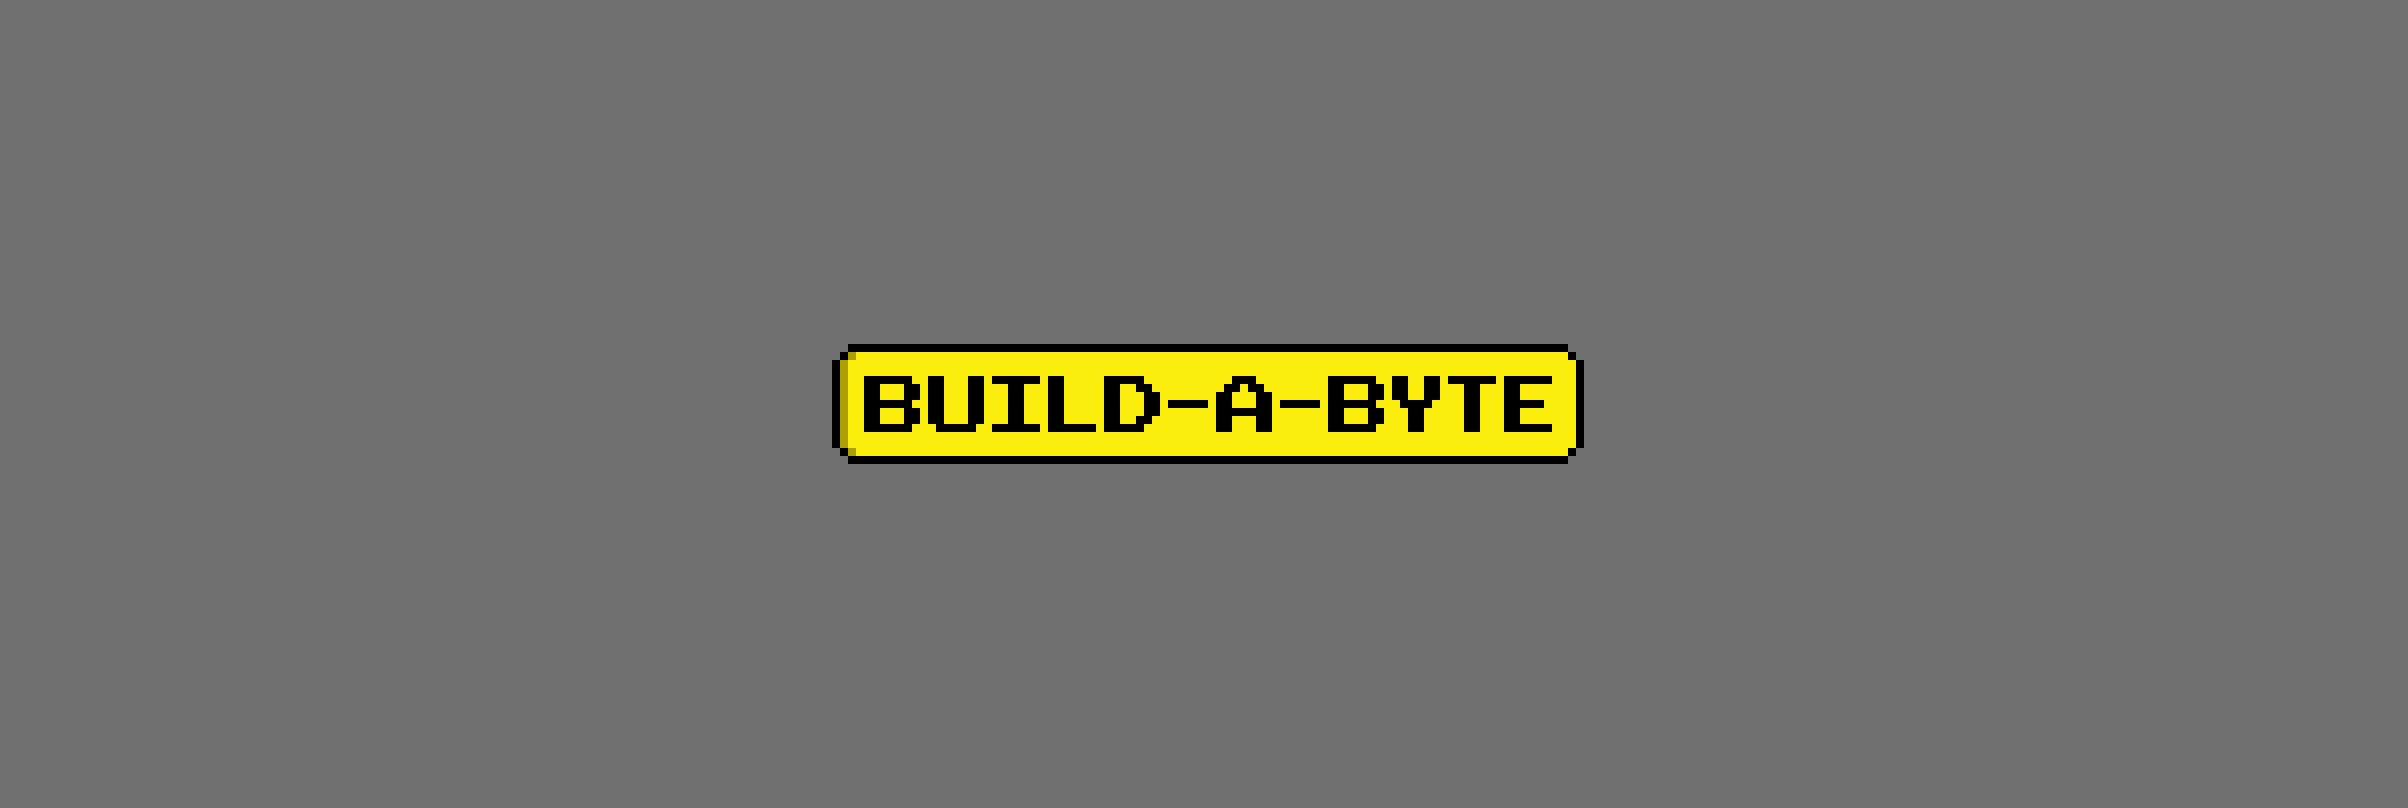 Build-A-Byte 横幅